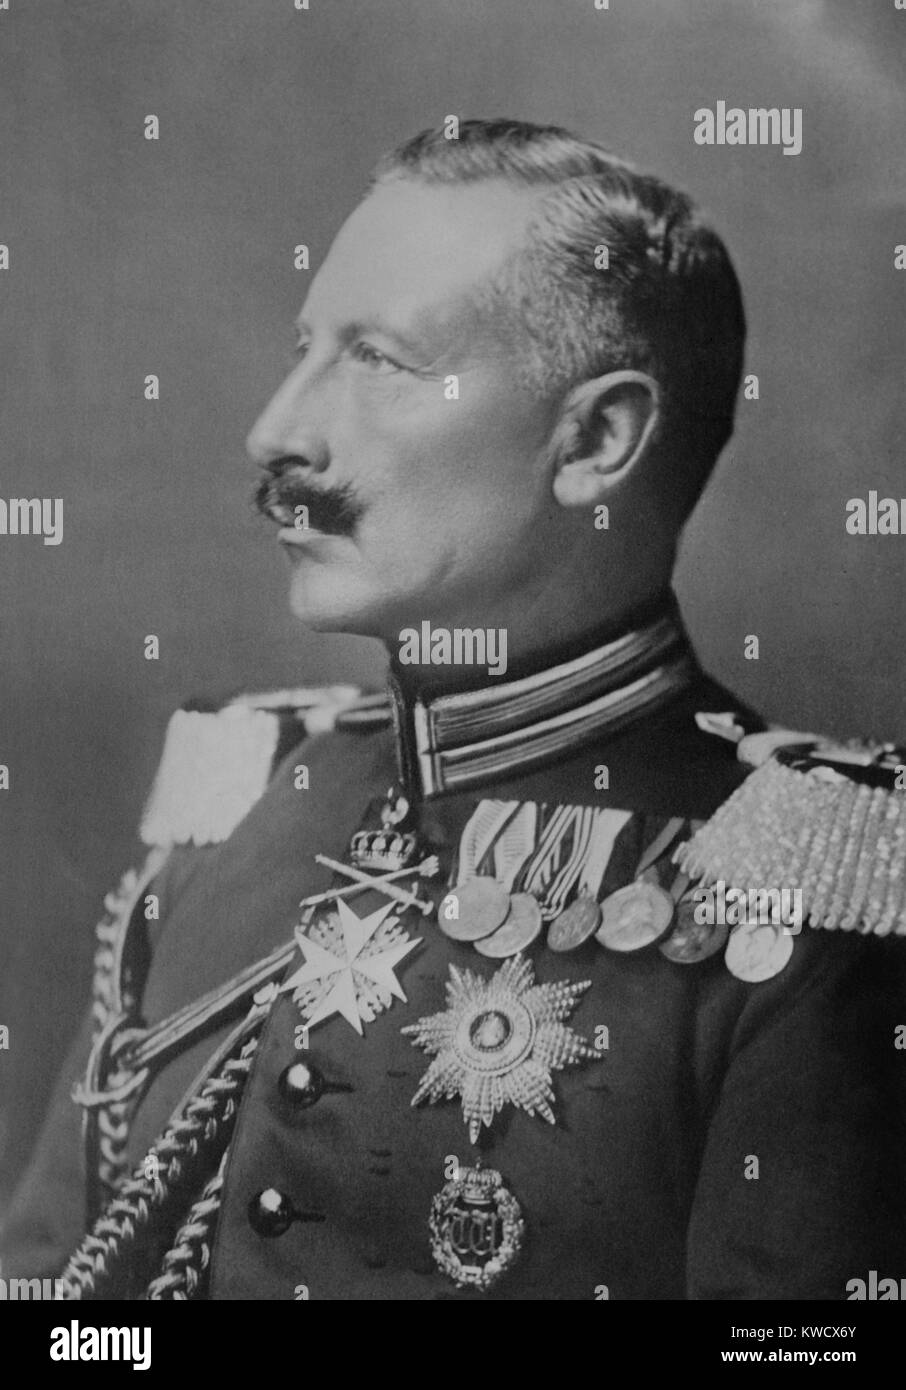 Le kaiser Guillaume II d'Allemagne, ch. 1914. En tant que chef de l'Etat allemand il était villainized pour provoquer la seconde guerre mondiale 1. Les causes sont plus complexes, mais son BSLOC bellicosity militariste contribué (_2017_2_42) Banque D'Images